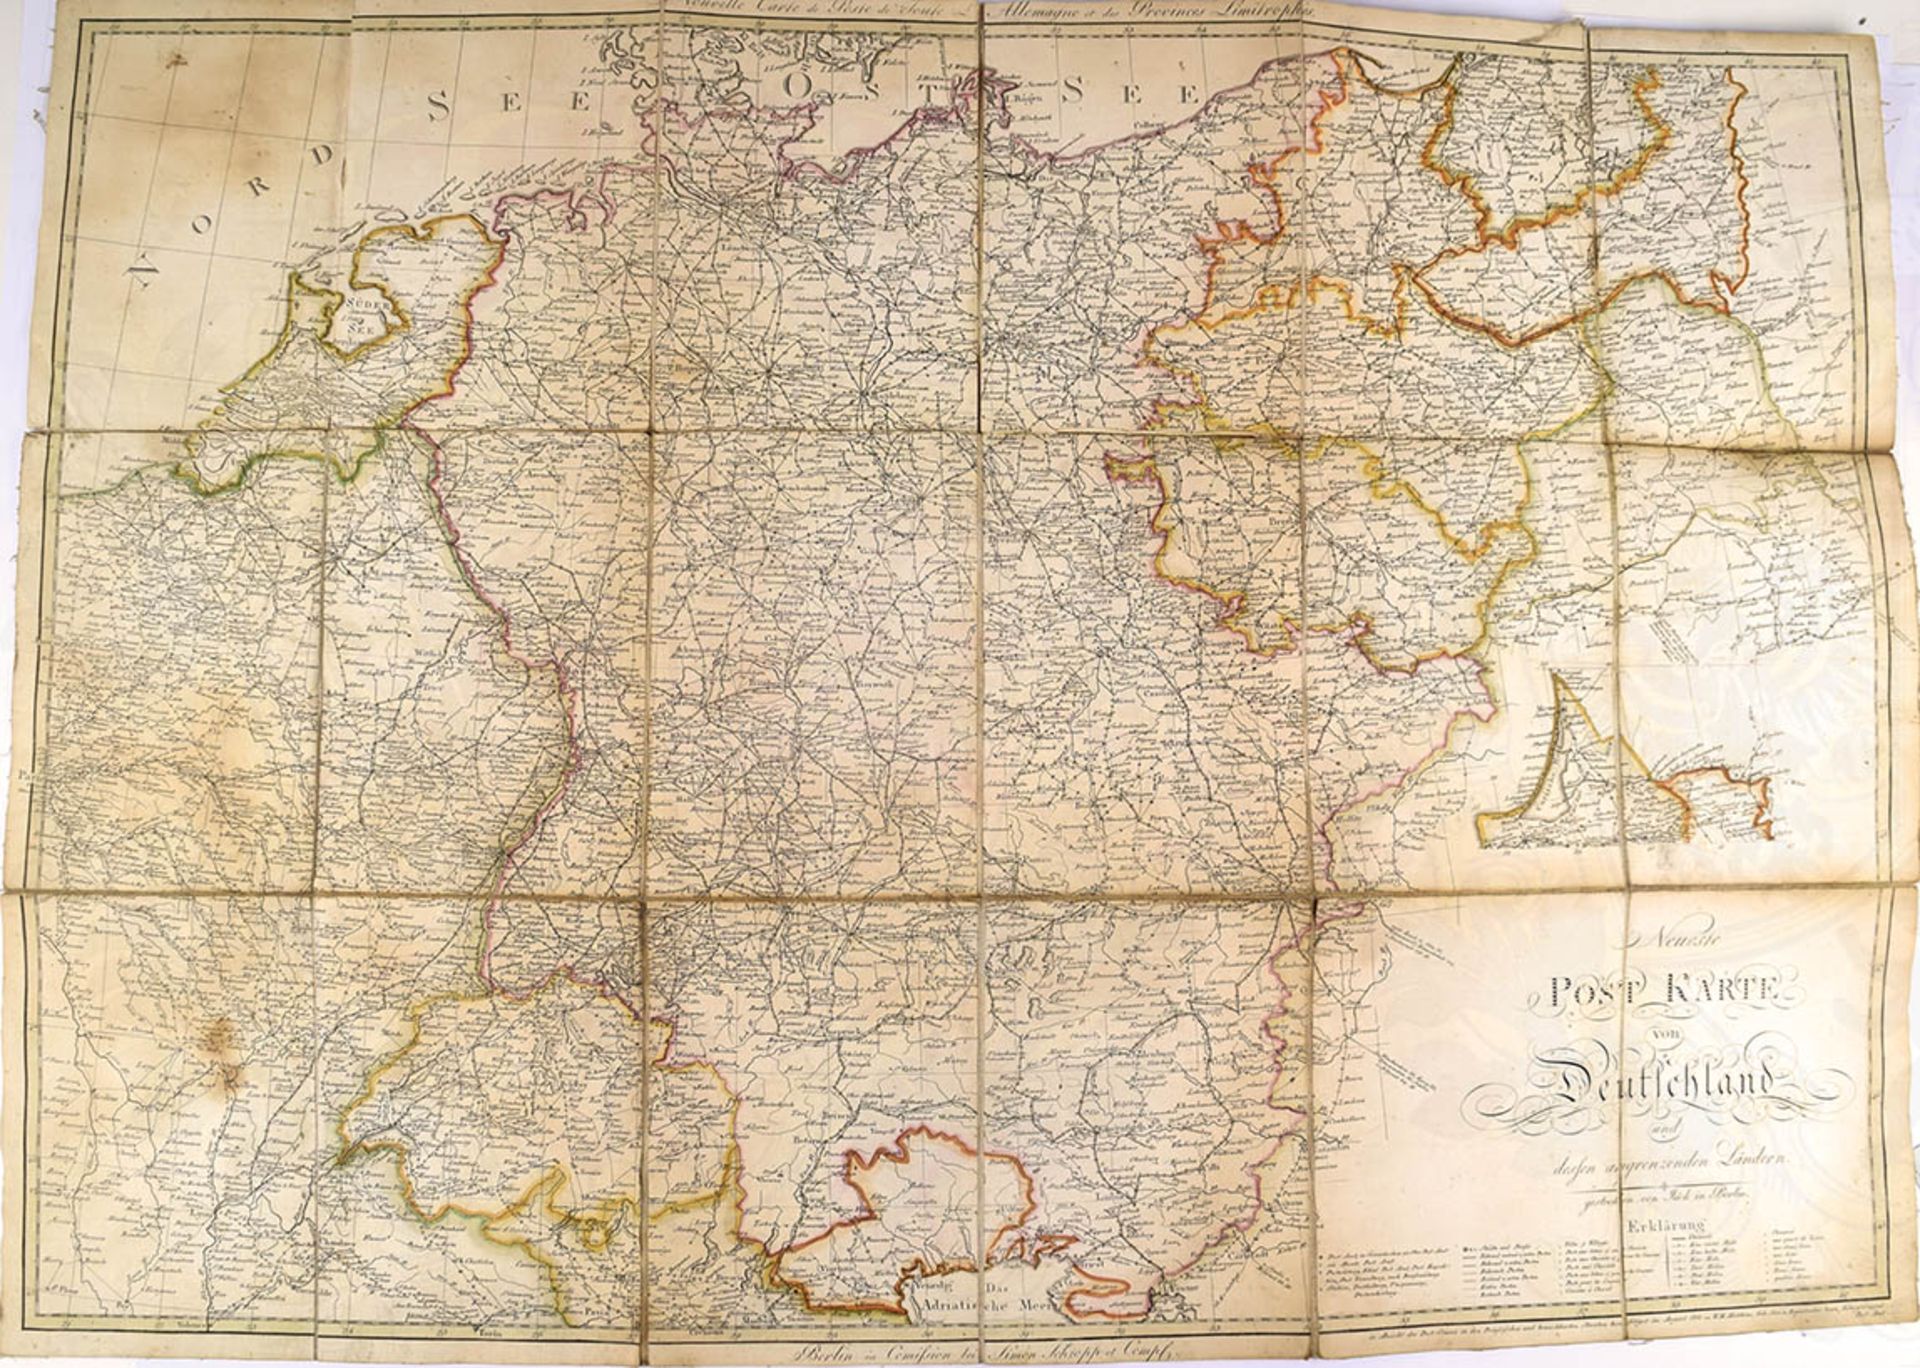 2 ROUTEN-KARTEN, "Neueste Post Karte von Deutschland" u. "Post Charte von Teutschland", 1801 bzw. - Bild 2 aus 2